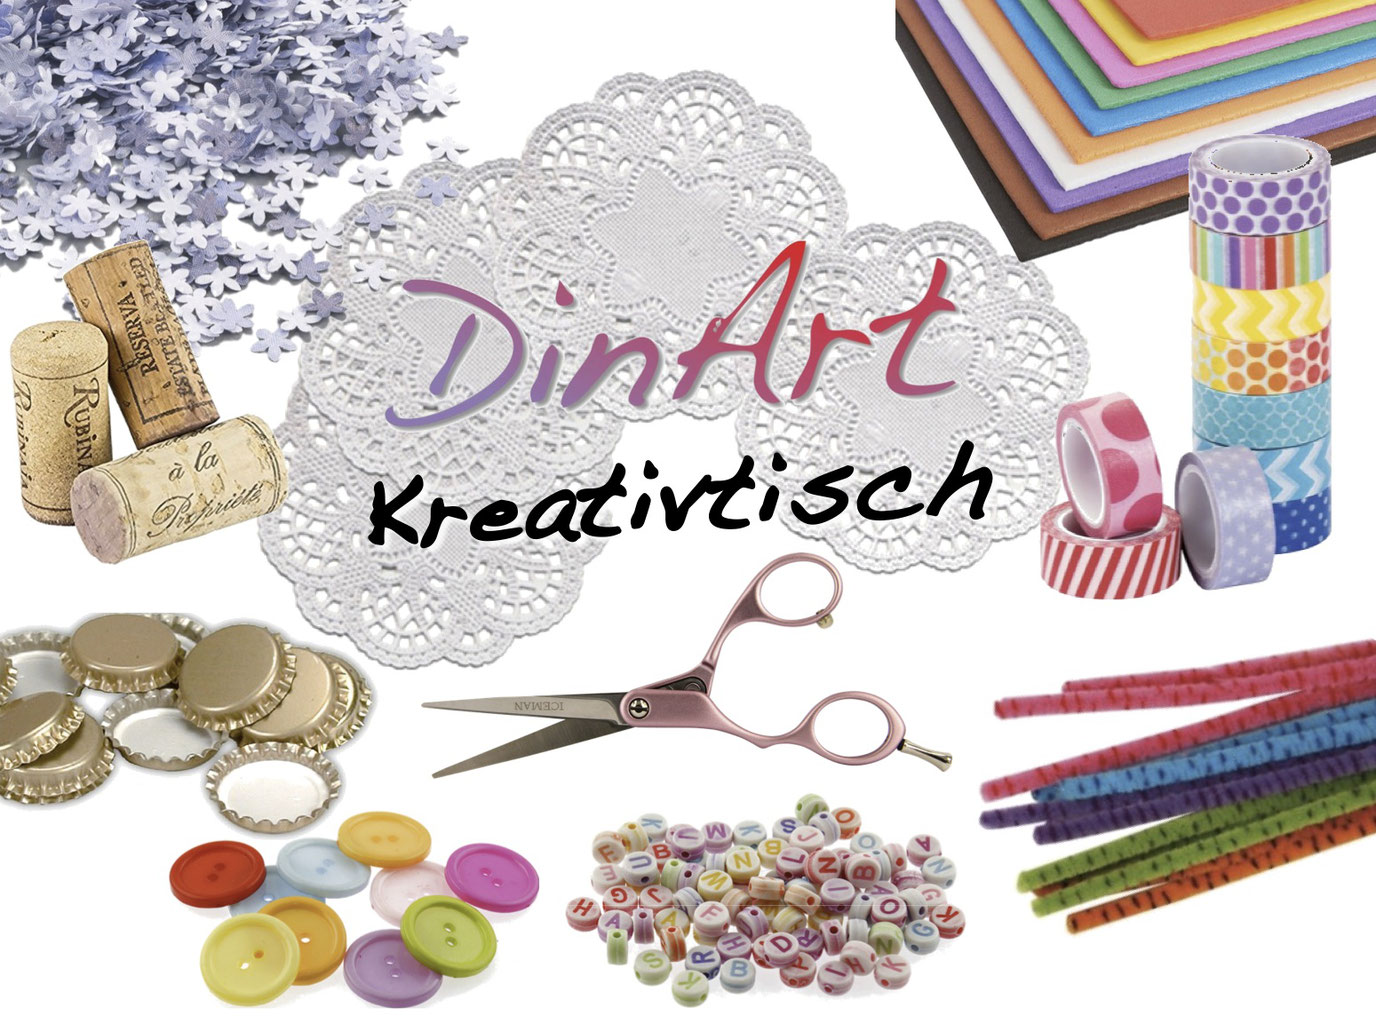 (c) Dinart.ch